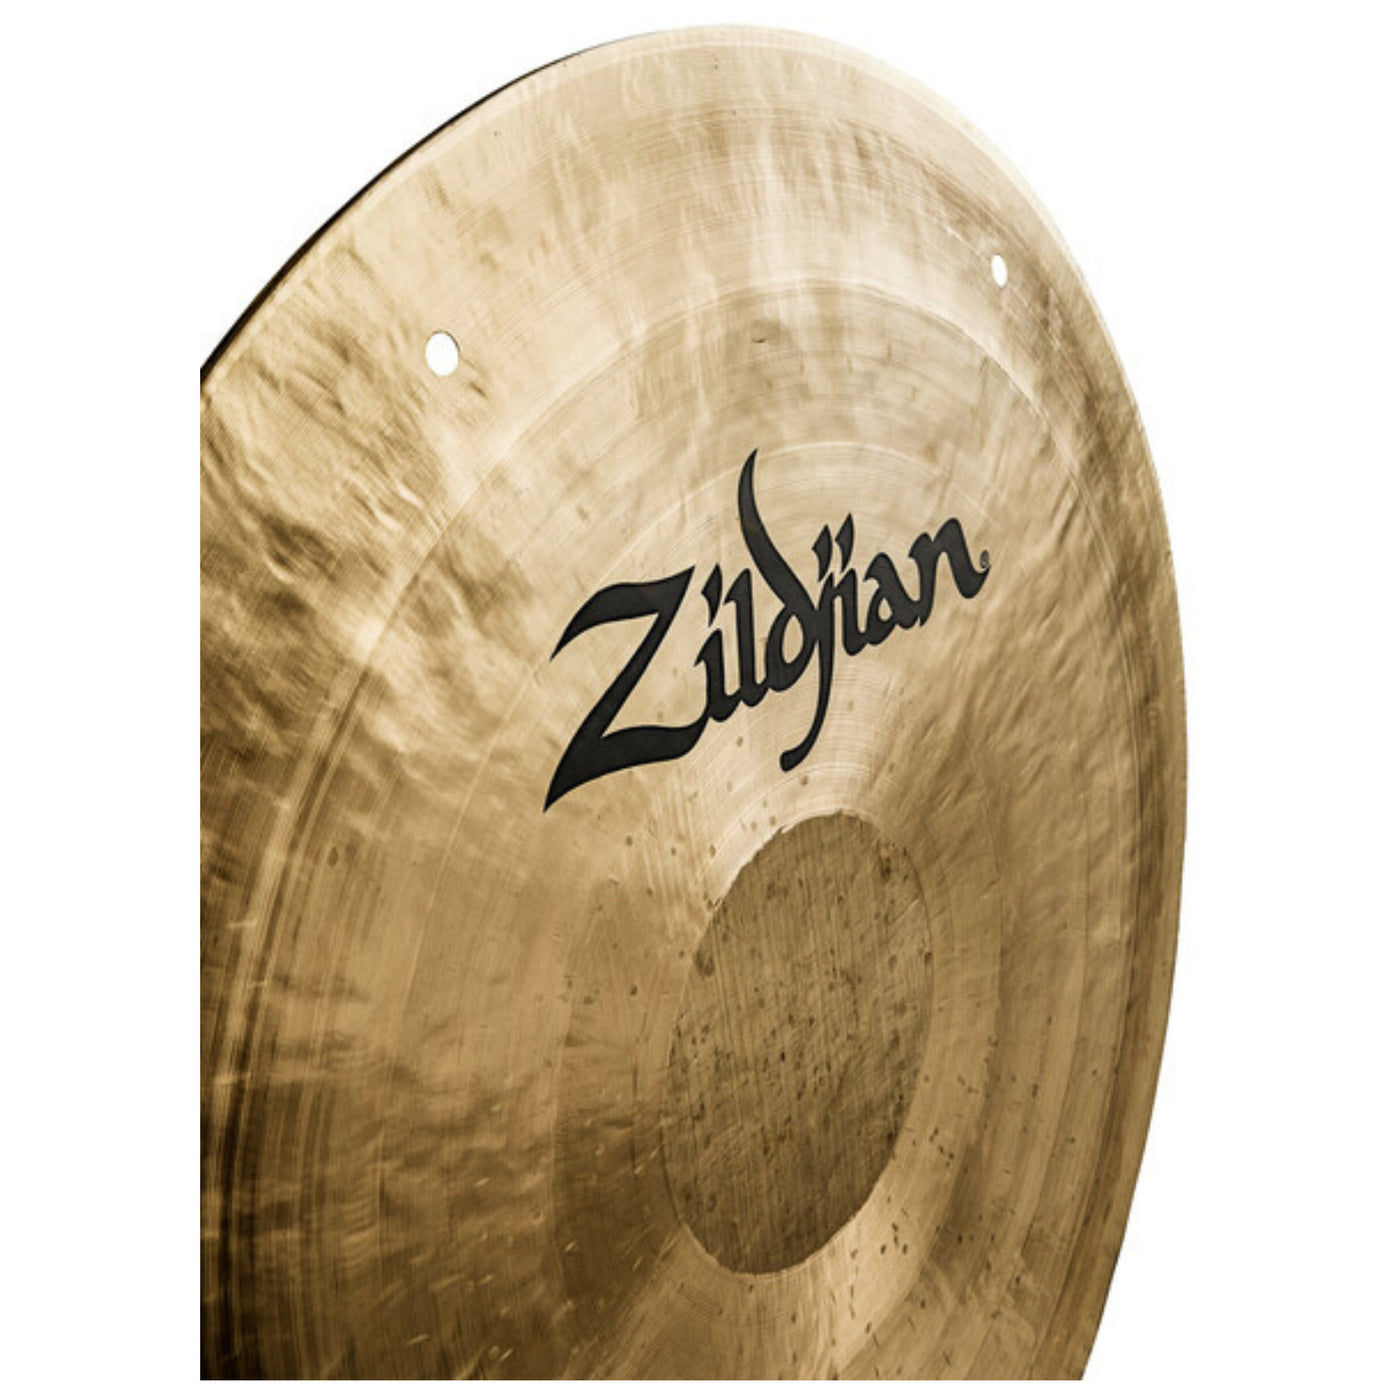 Zildjian Wind Gong 24-inch, Black Logo